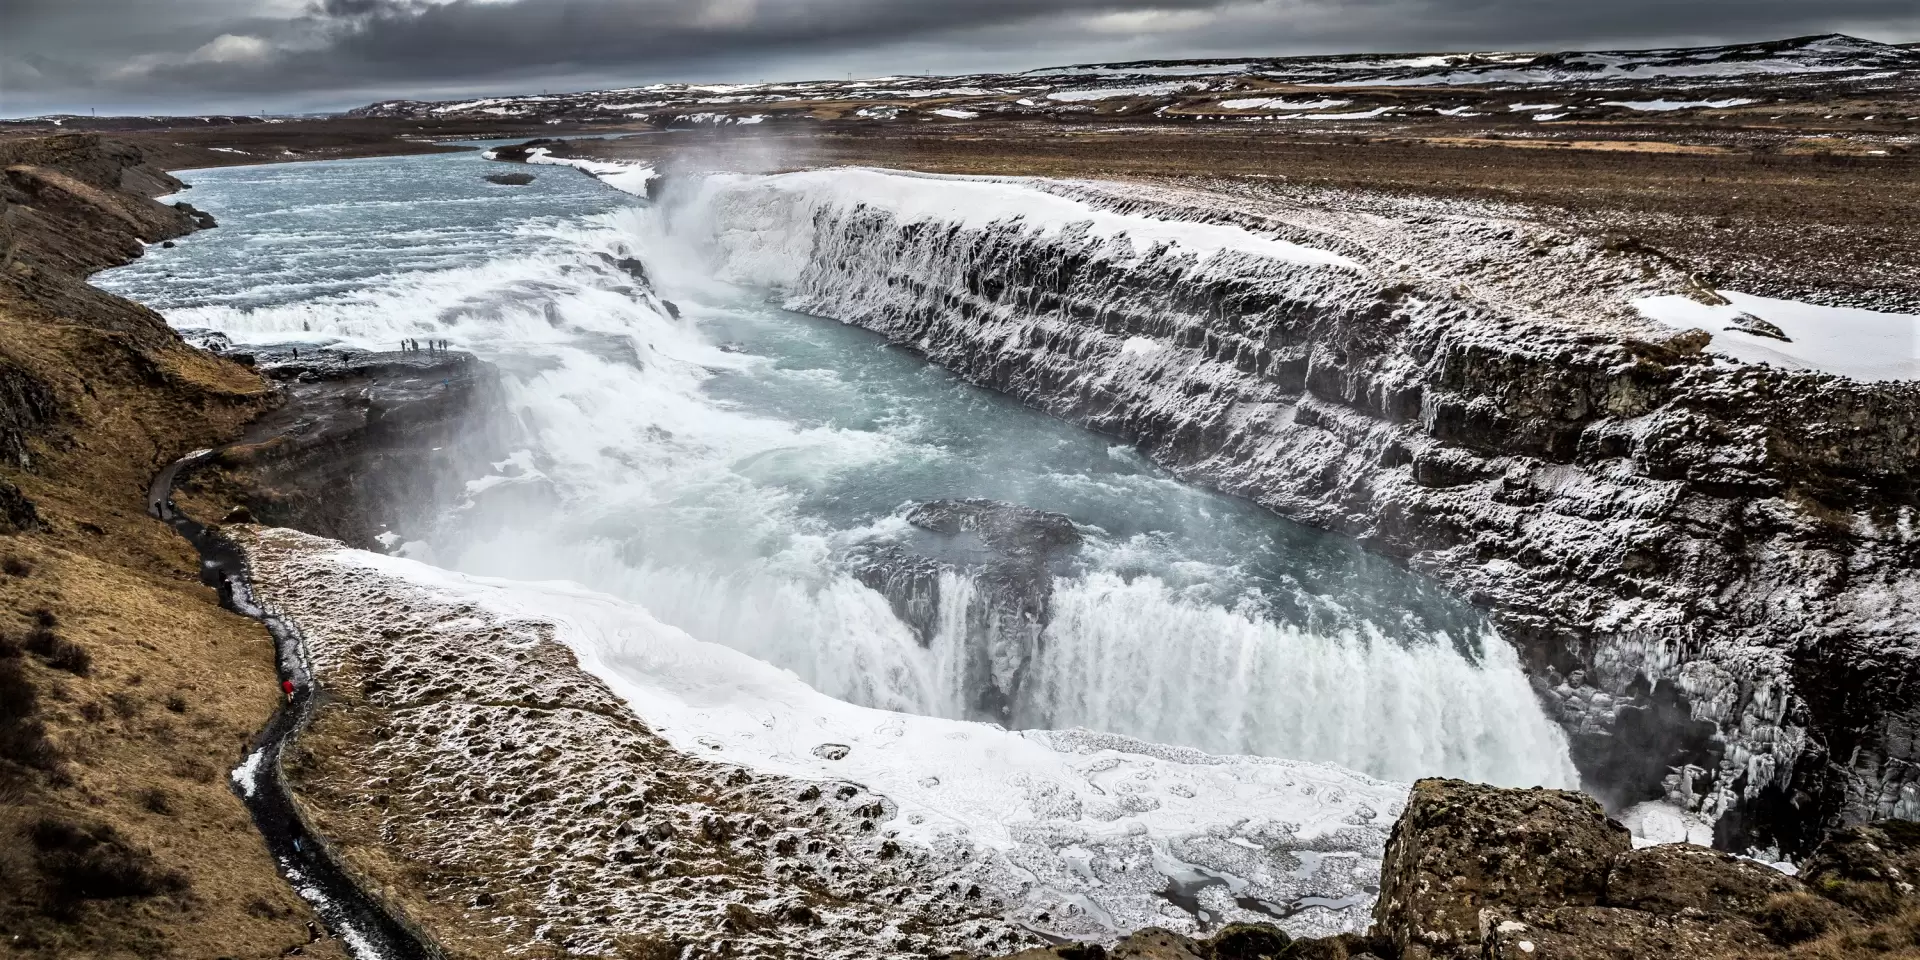 Islanda și Aurora Boreală